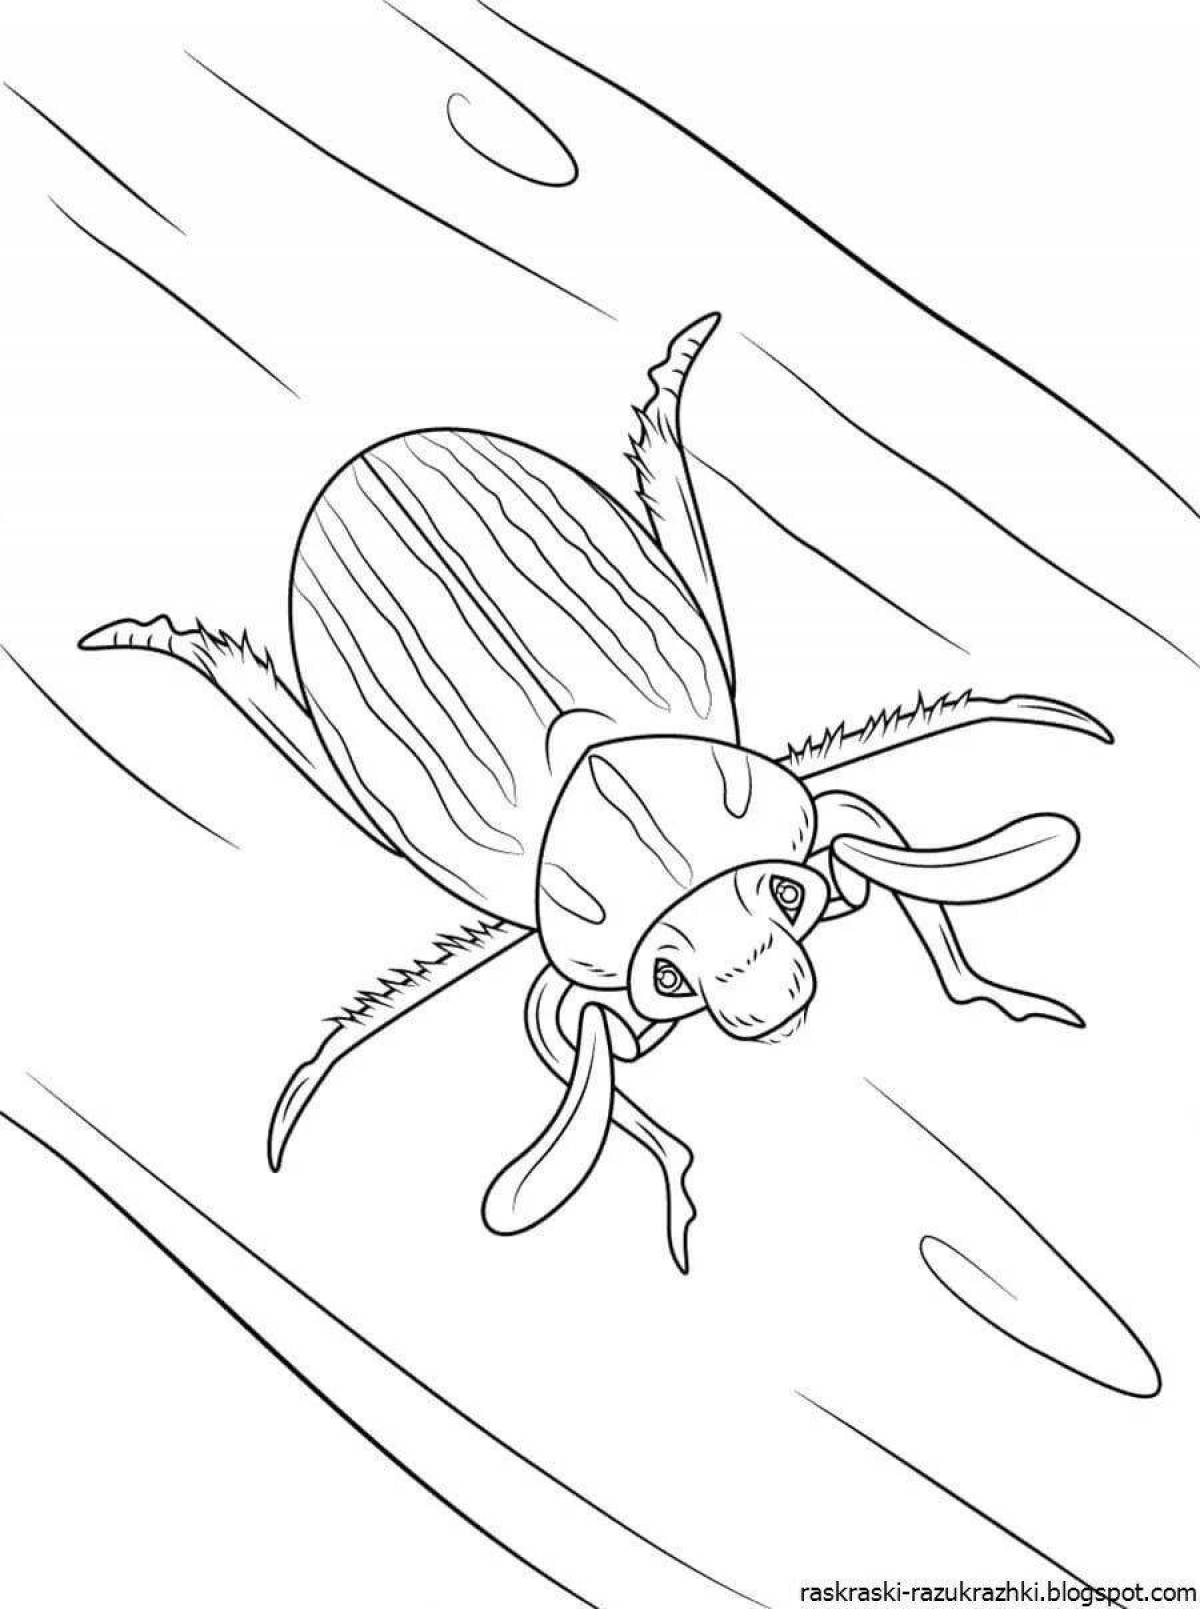 Раскраска насекомых: векторные изображения и иллюстрации, которые можно скачать бесплатно | Freepik